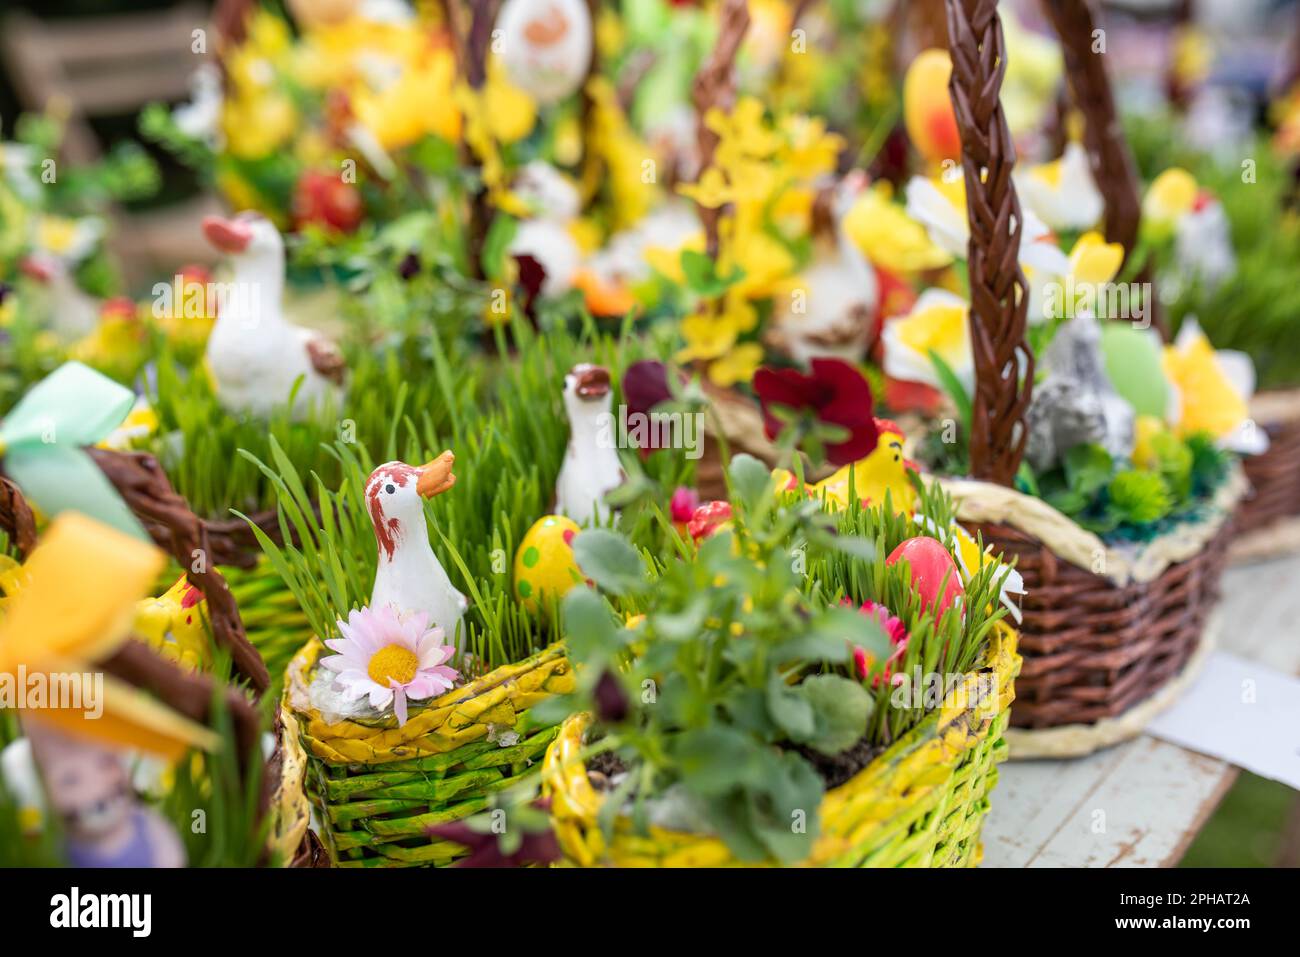 Pasqua decorazione cesto di vimini venduto in una fiera della Repubblica Ceca, fiori primaverili tradizionali - tulipano, primrose, margherita, pioggia d'oro e oca e r Foto Stock